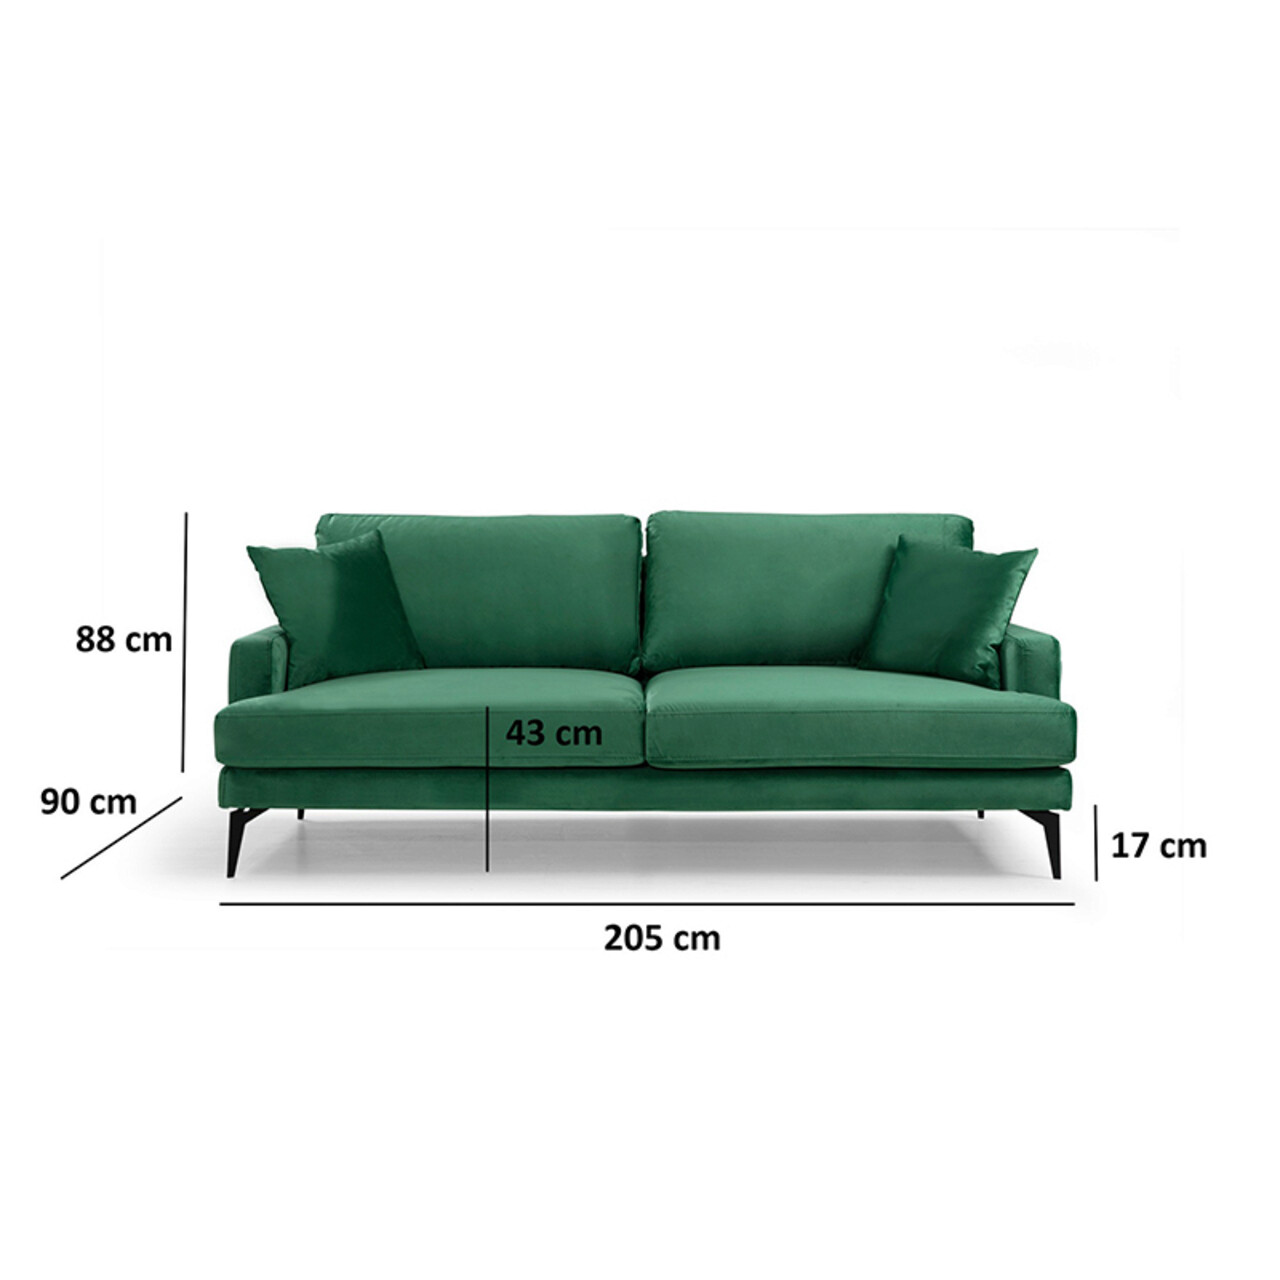 Canapea 3 locuri Fortune, Pakketo, 205x90x88 cm, catifea, verde/negru